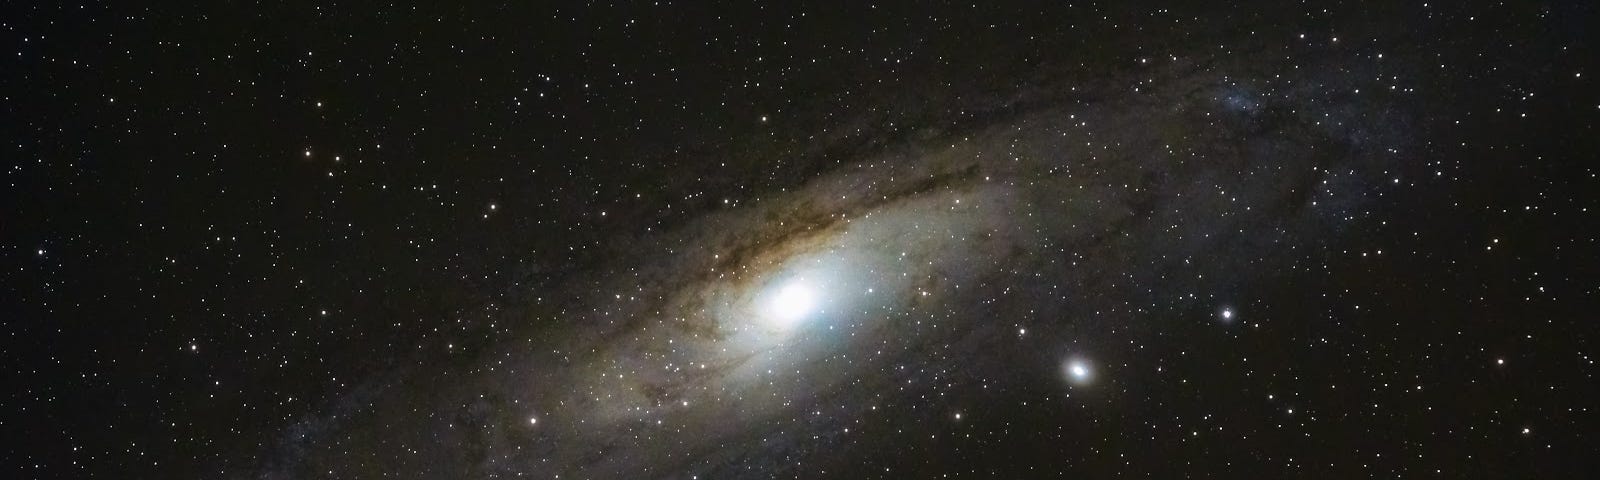 Star galaxy